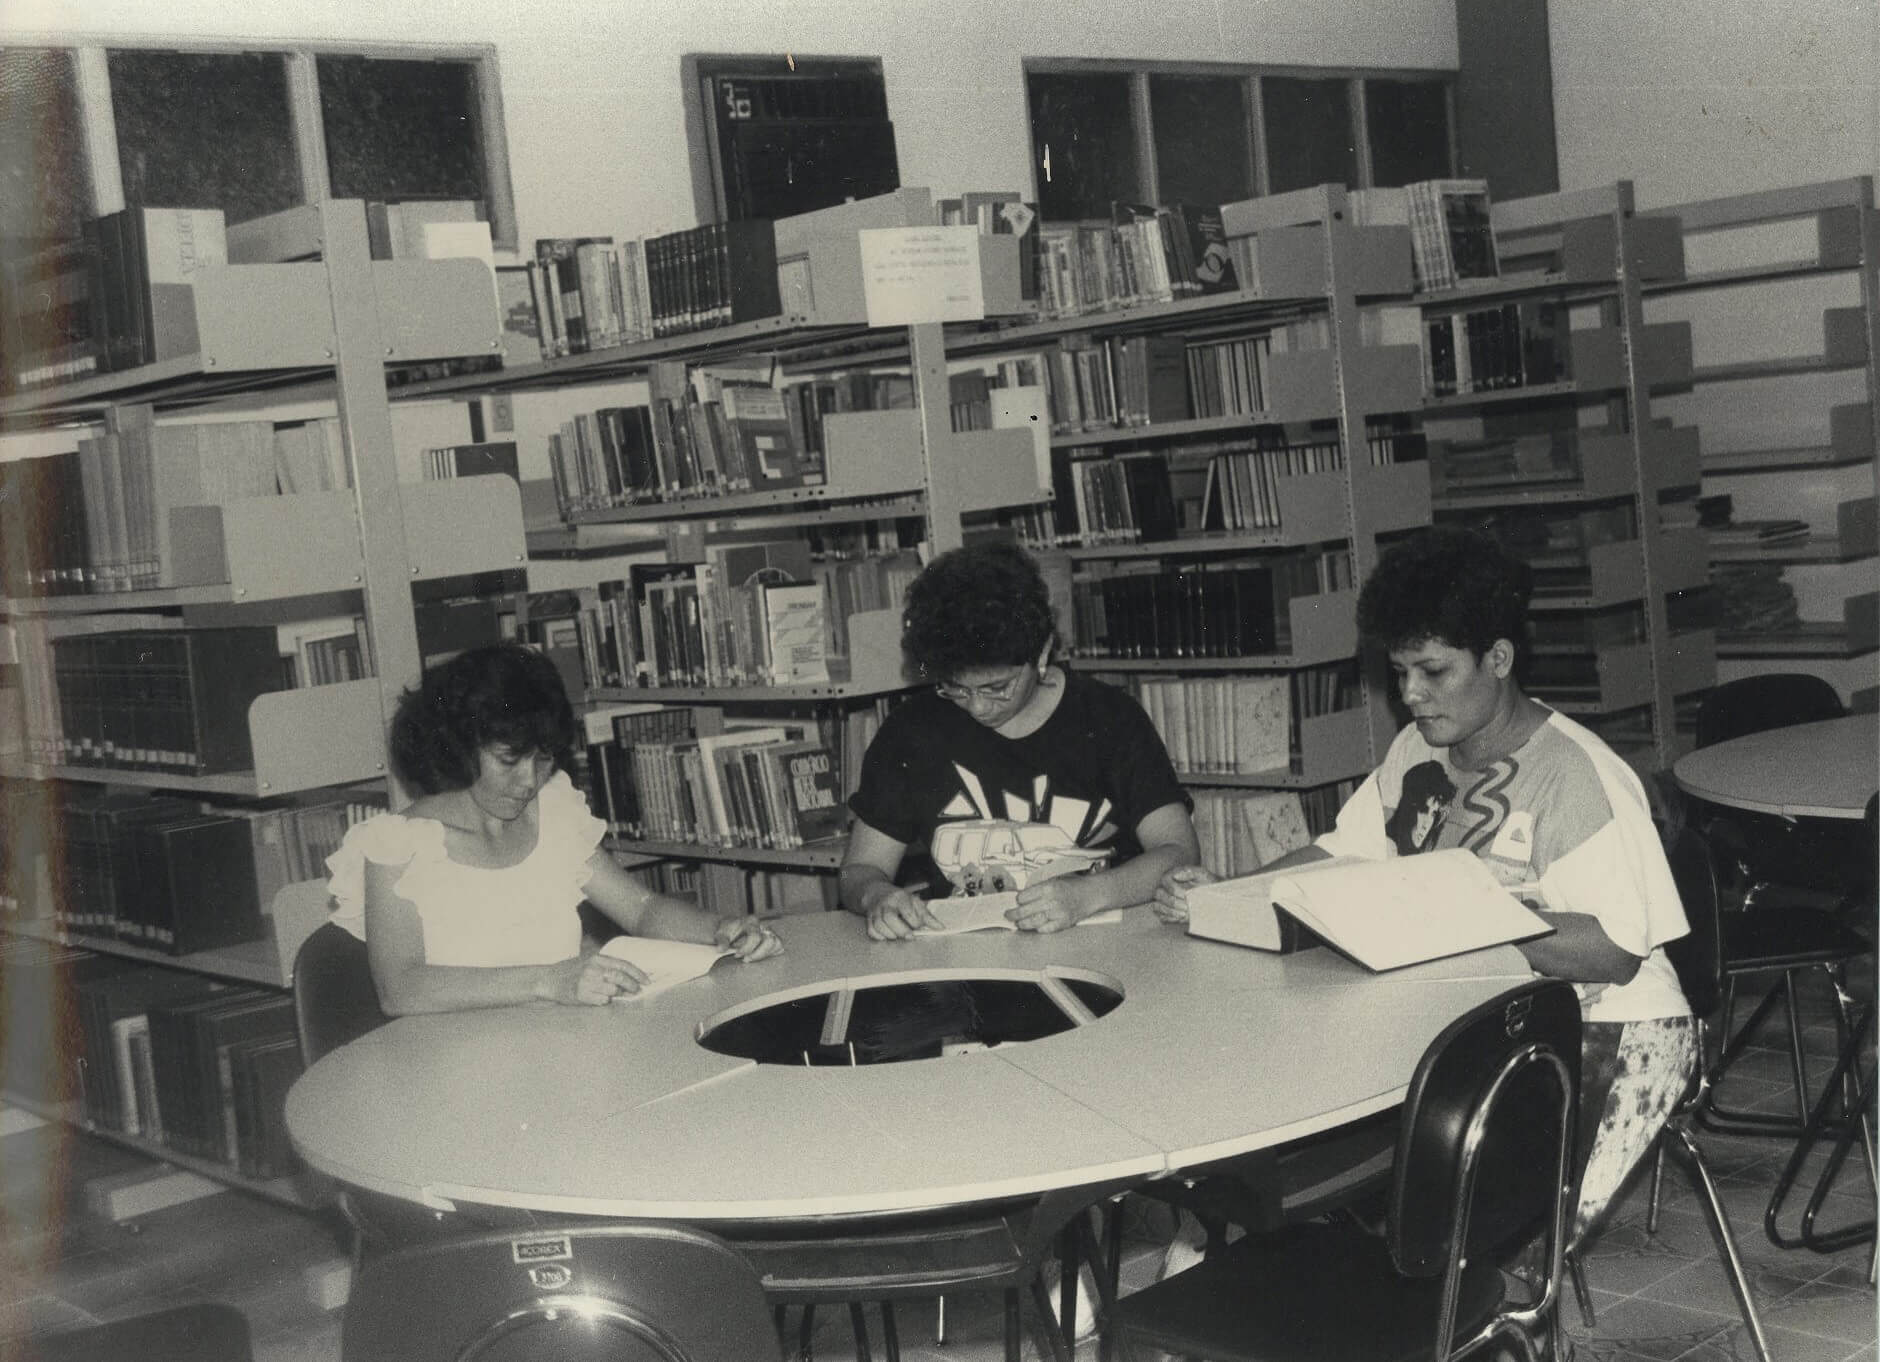 1970 / 1980 - Centros de Educação Profissional